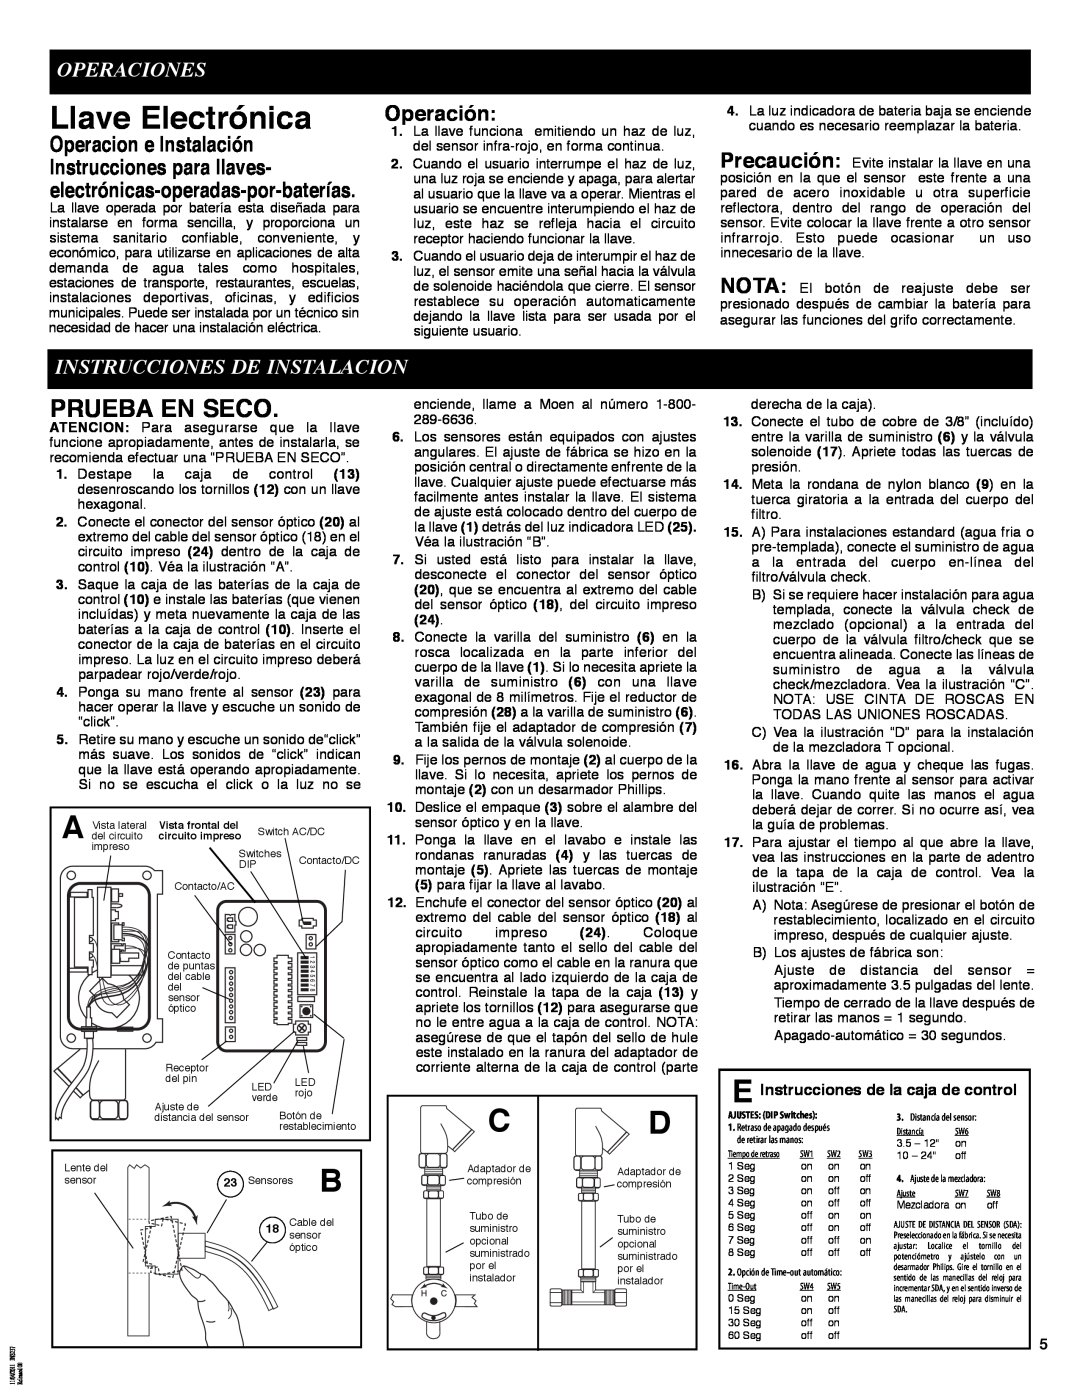 Moen 8301 manual Llave Electrónica, Operaciones, Instrucciones De Instalacion, Prueba En Seco, Operación 